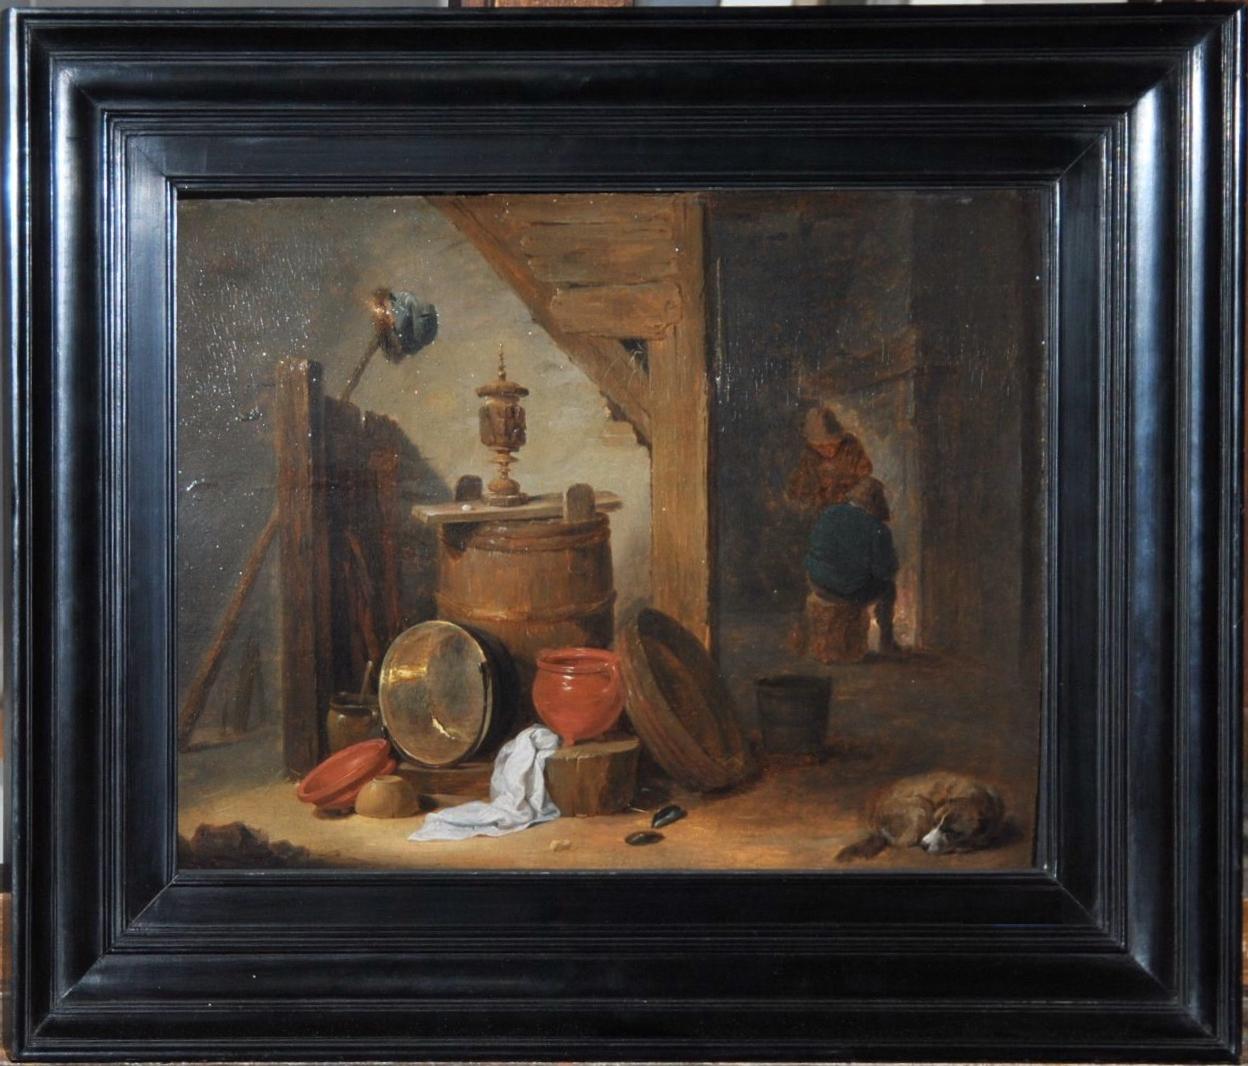 Ein Tavernen-Interieur mit Hund und Küchenzubehör  – Painting von David Teniers the Younger